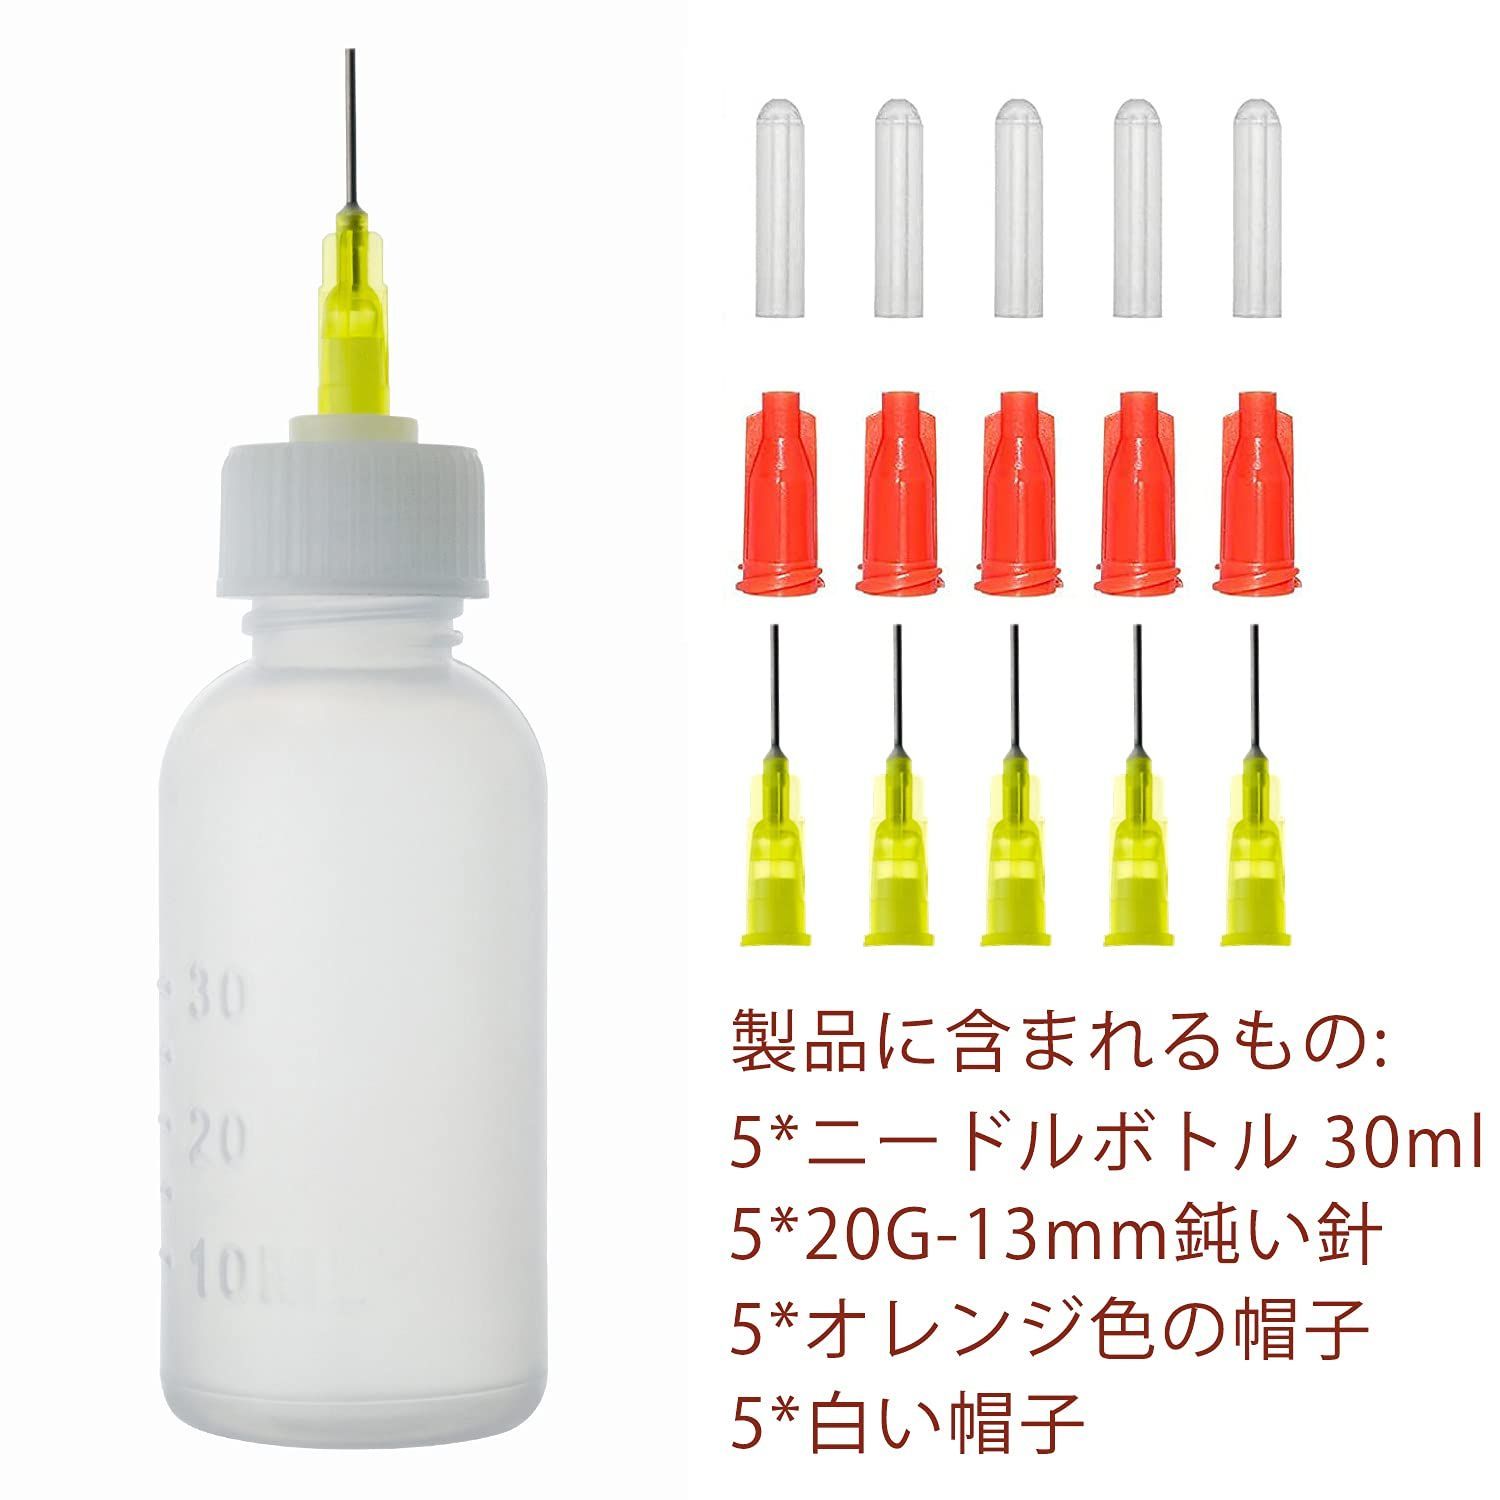 【人気商品】(30ML) 5個 精密ボトル インクアート DIY ハンドメイド クラフト 模型 製作 接着剤ボトル アプリケーター